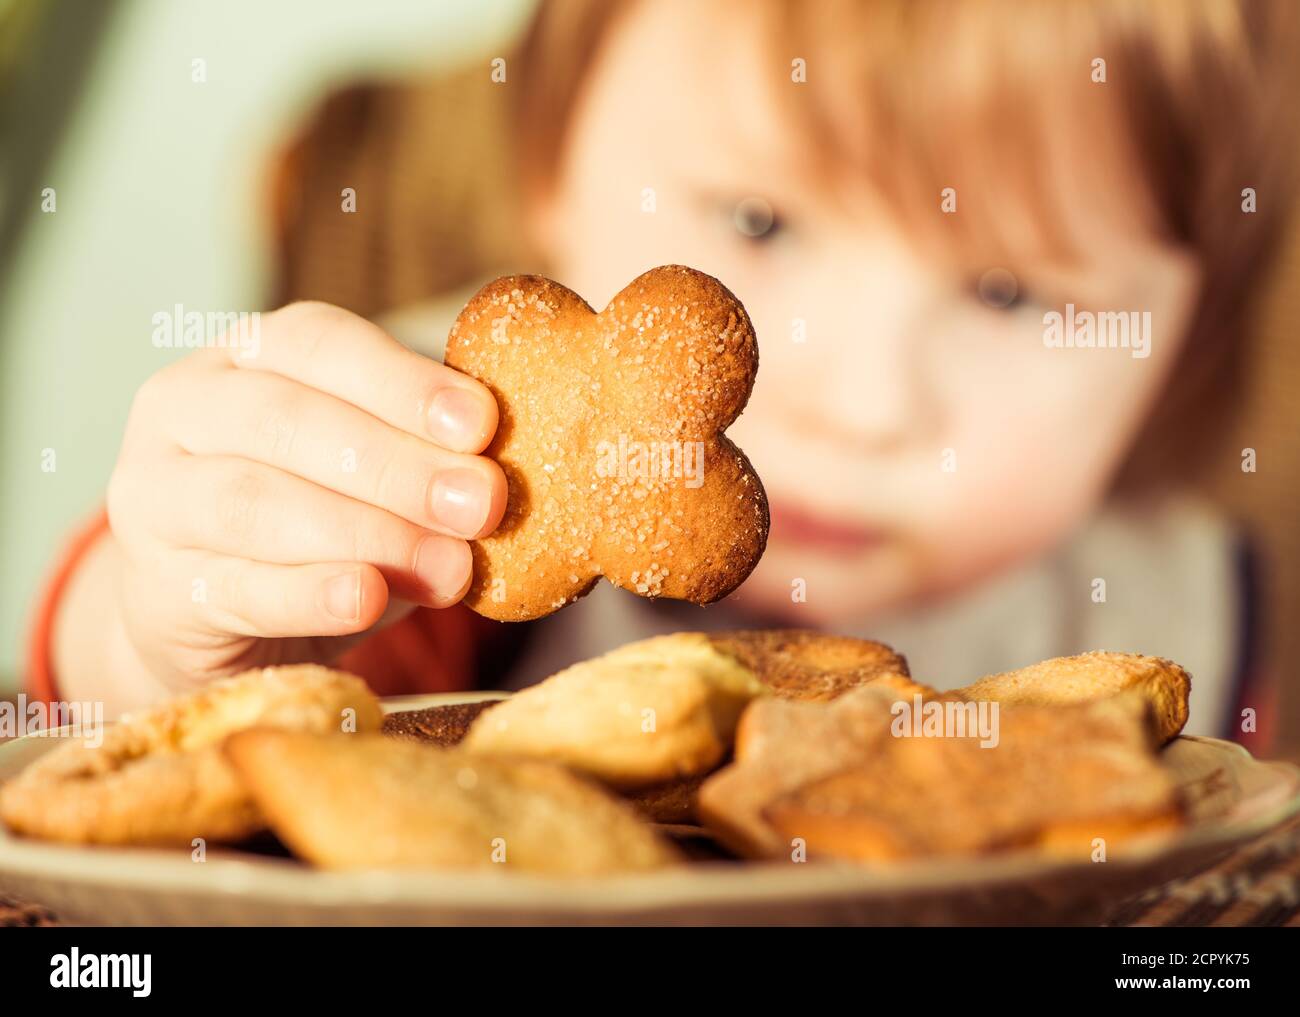 niño tomando galletas dulces del plato Foto de stock